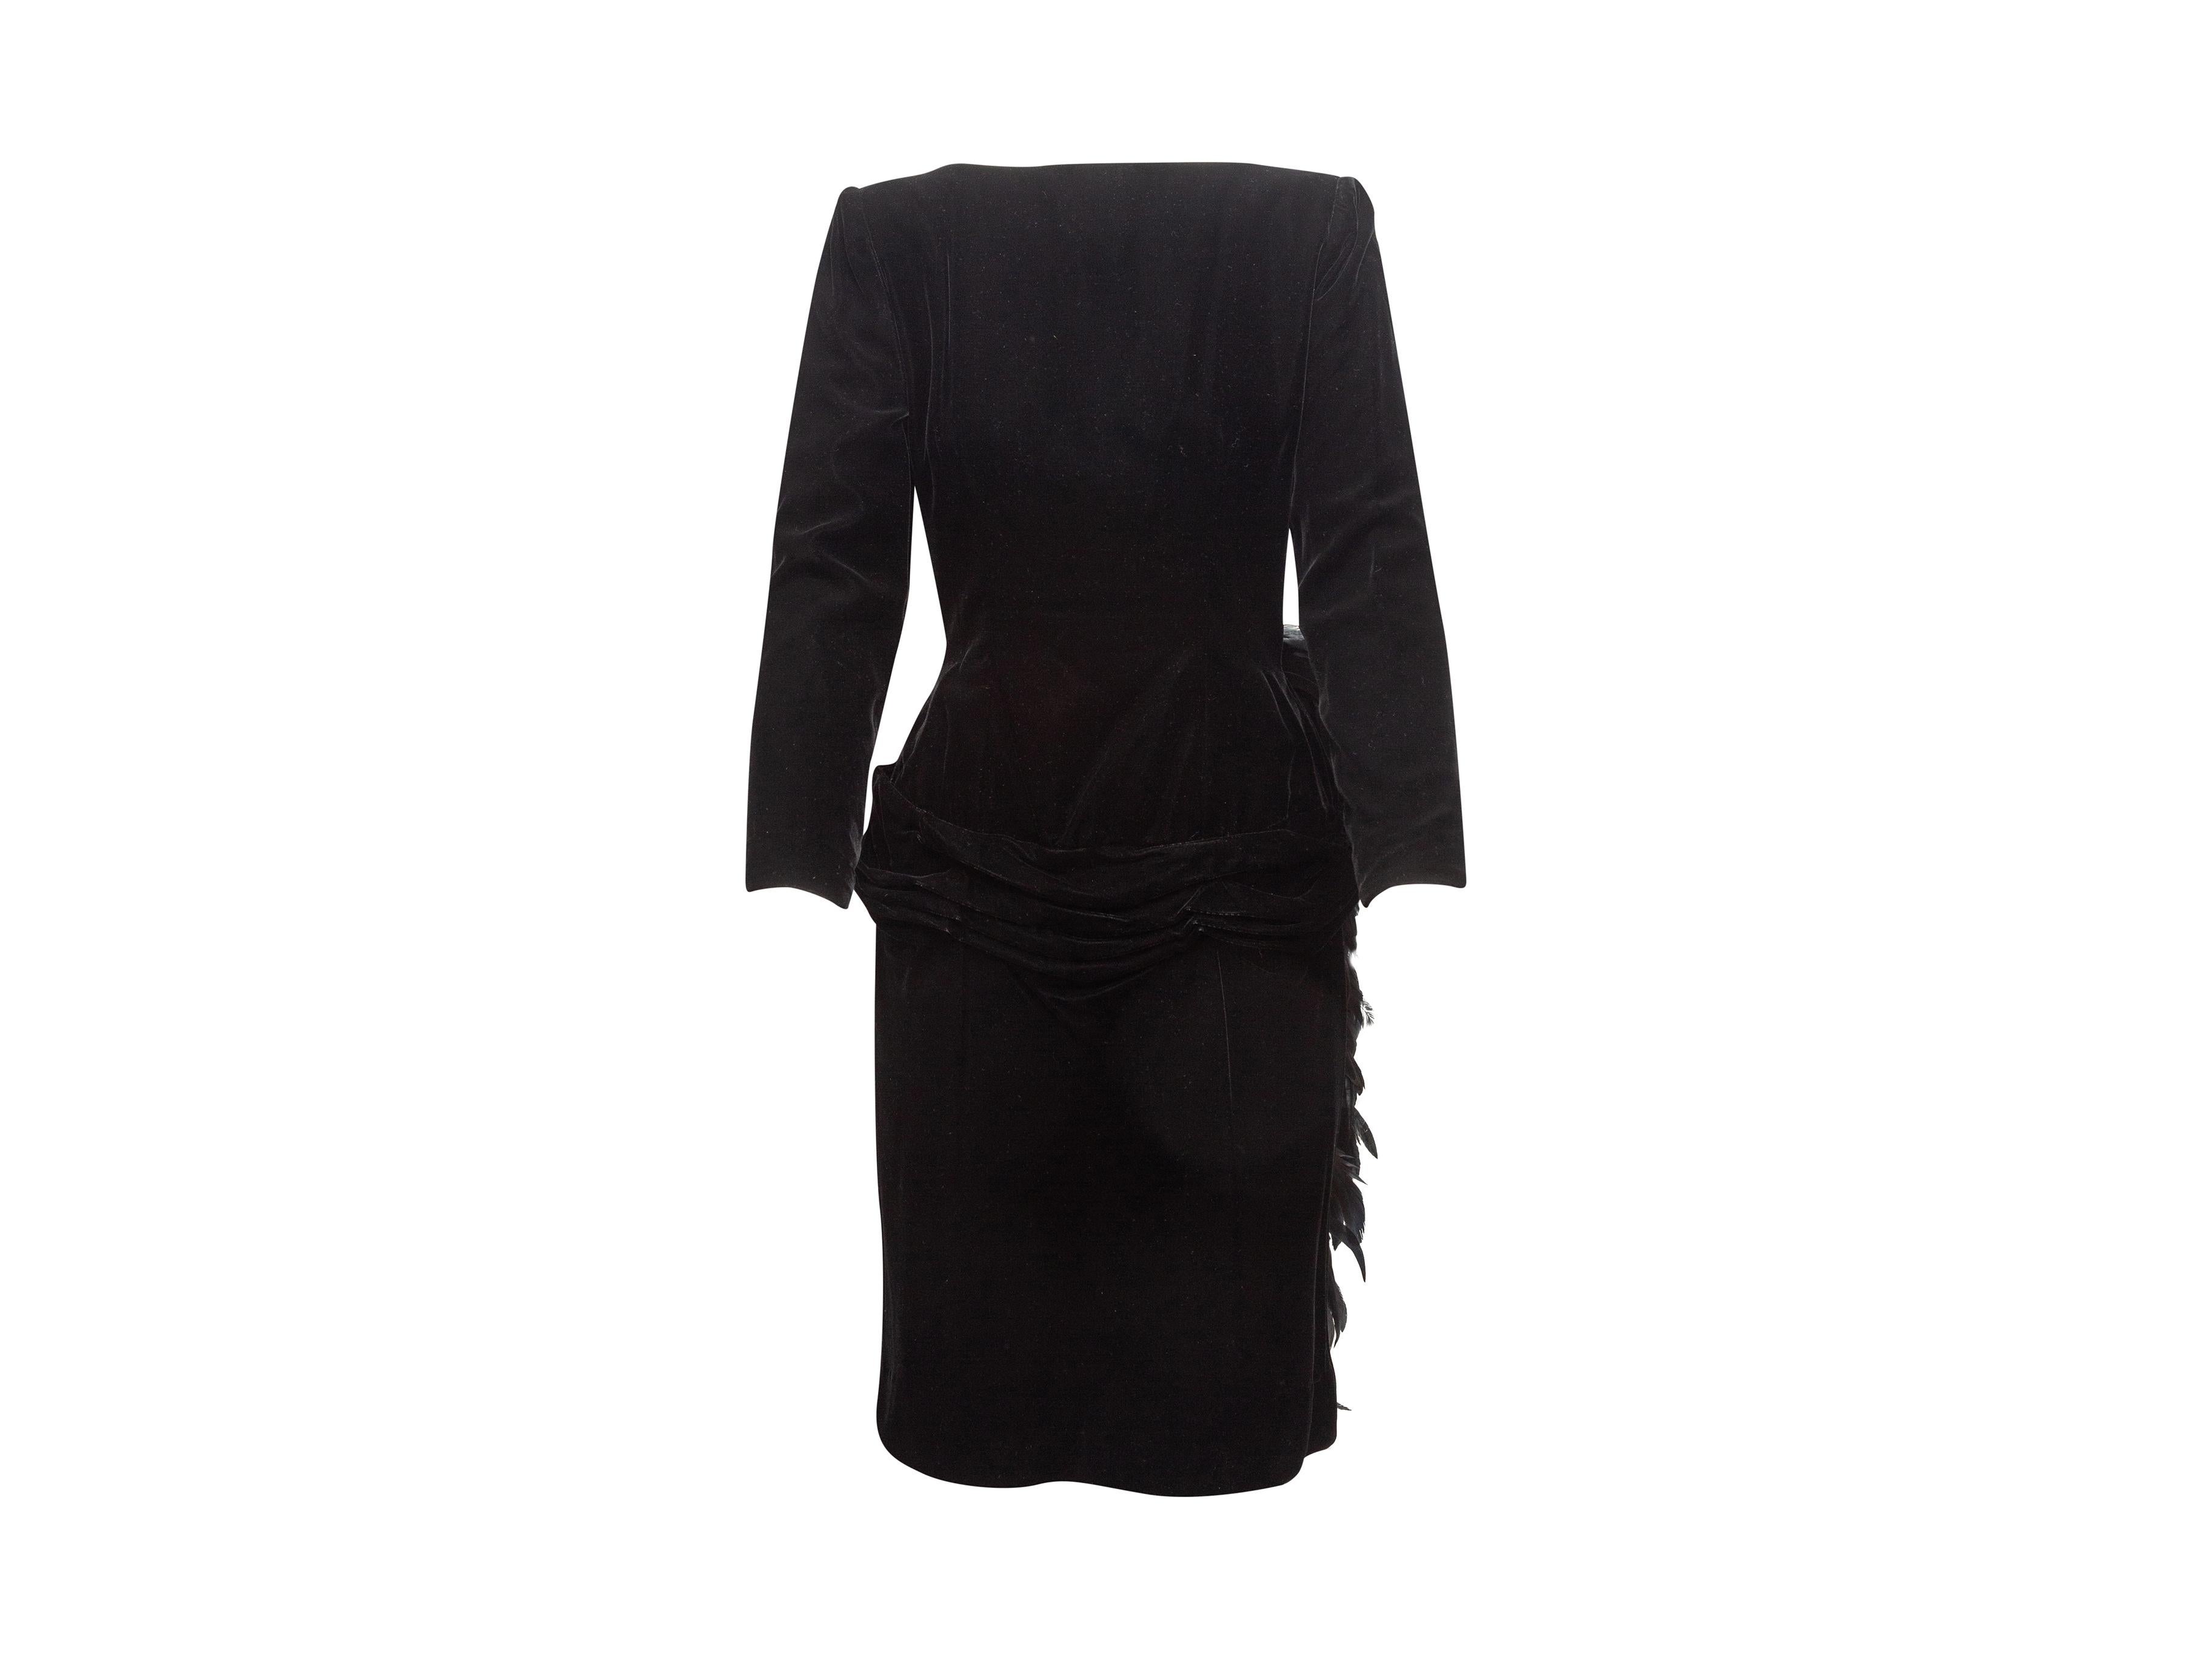 Product details: Vintage black velvet cocktail dress by Oscar de la Renta. Boat neckline. Long sleeves. Feather bustle at back. Open back. 34